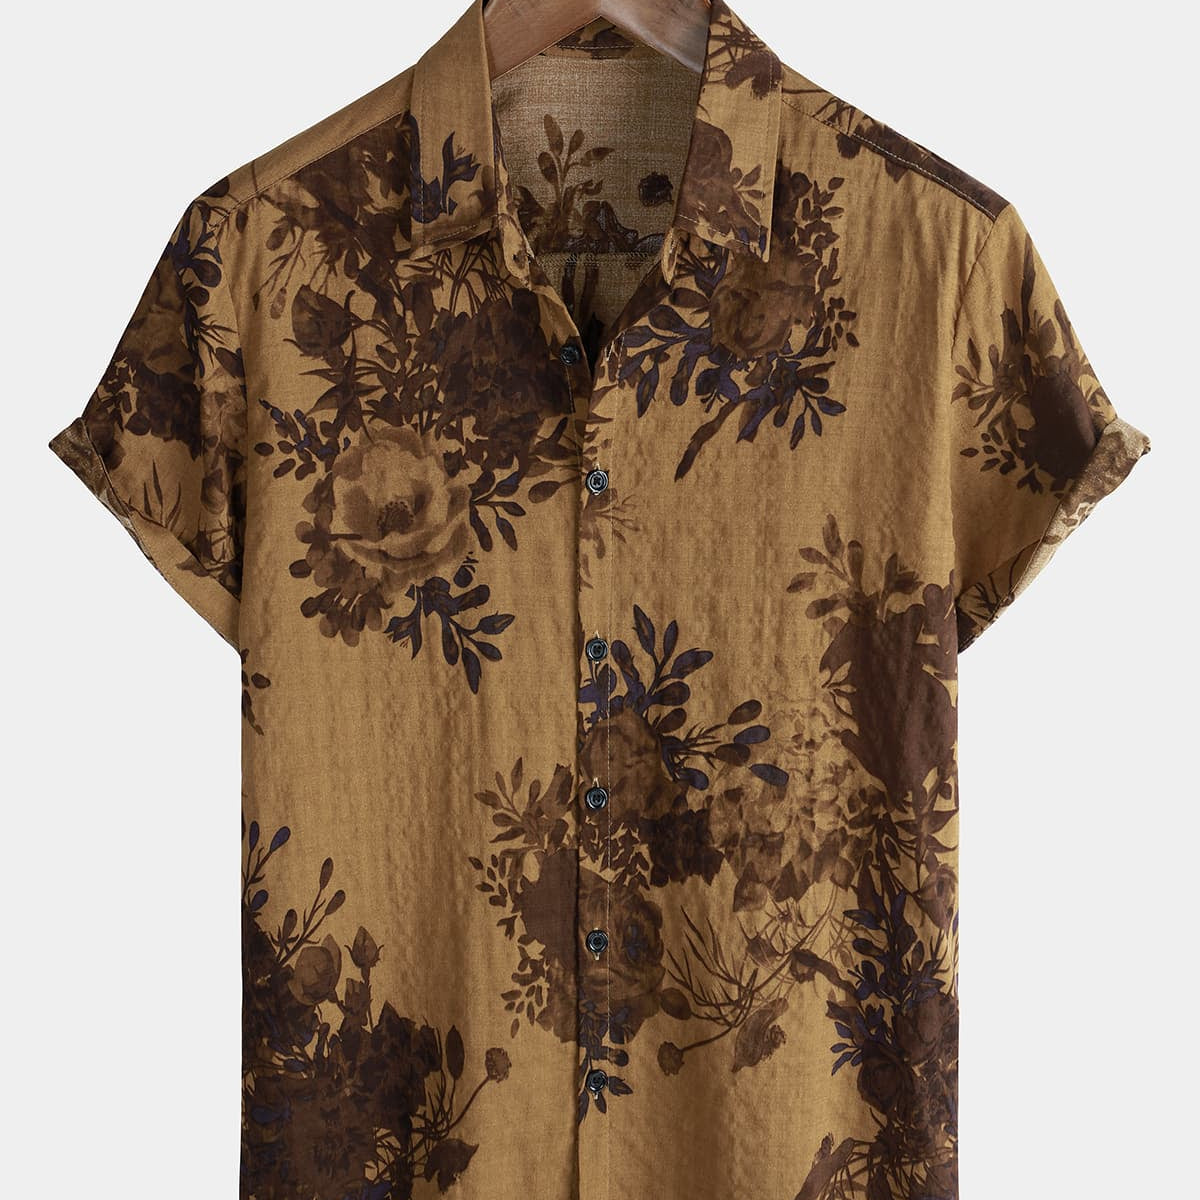 Men's Cotton Floral Short Sleeve Retro Vintage Button Up Shirt